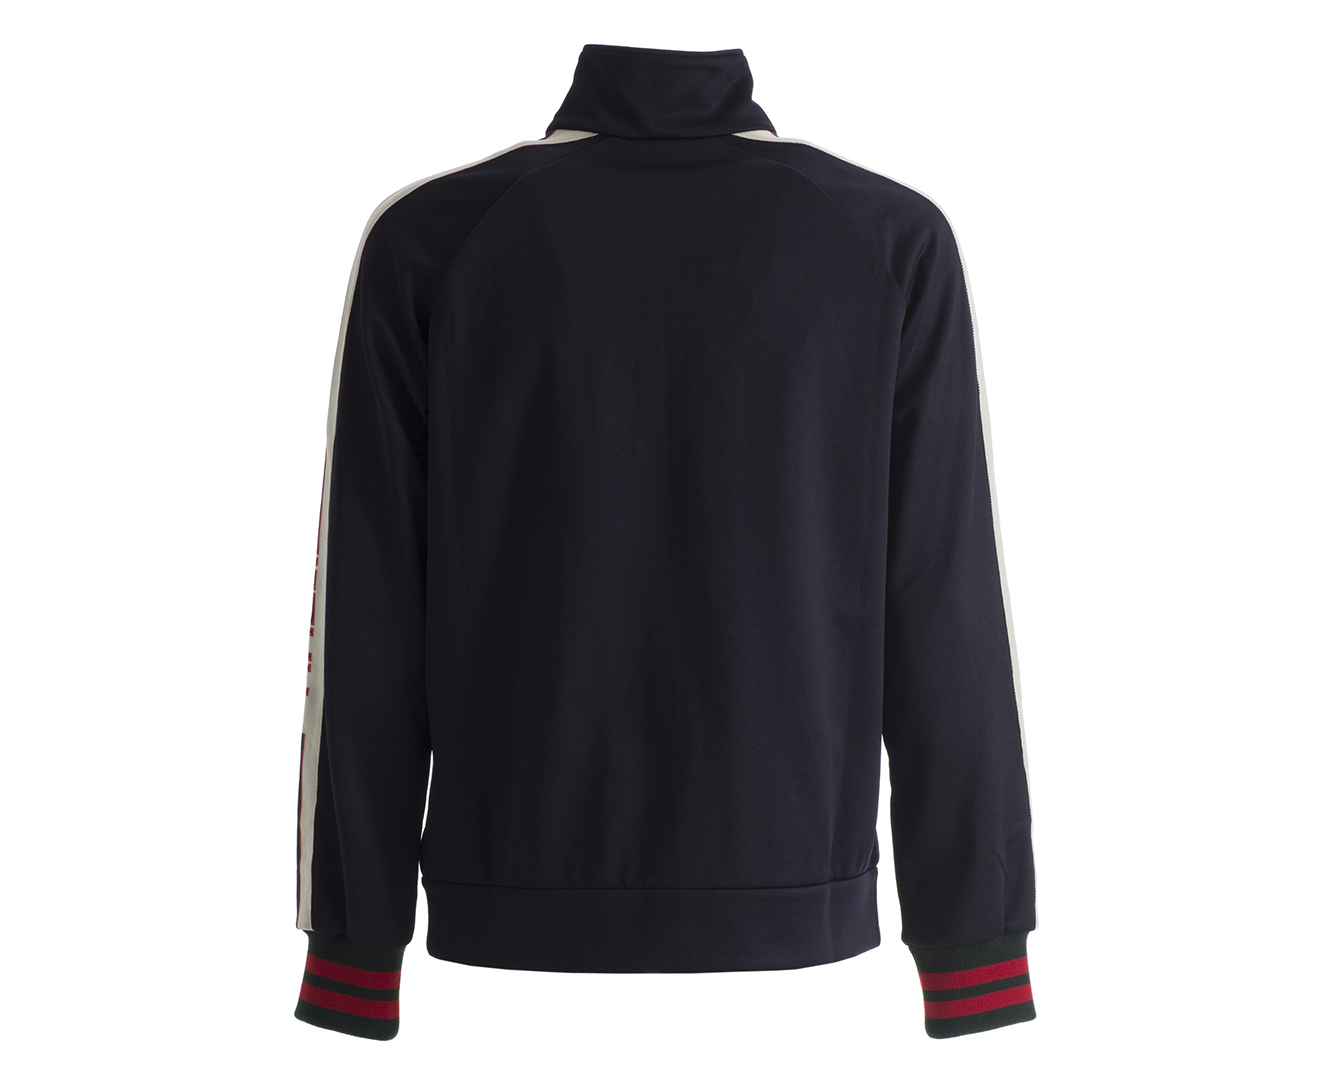 Gucci Men's Technical Jersey Jacket - Black | Catch.com.au